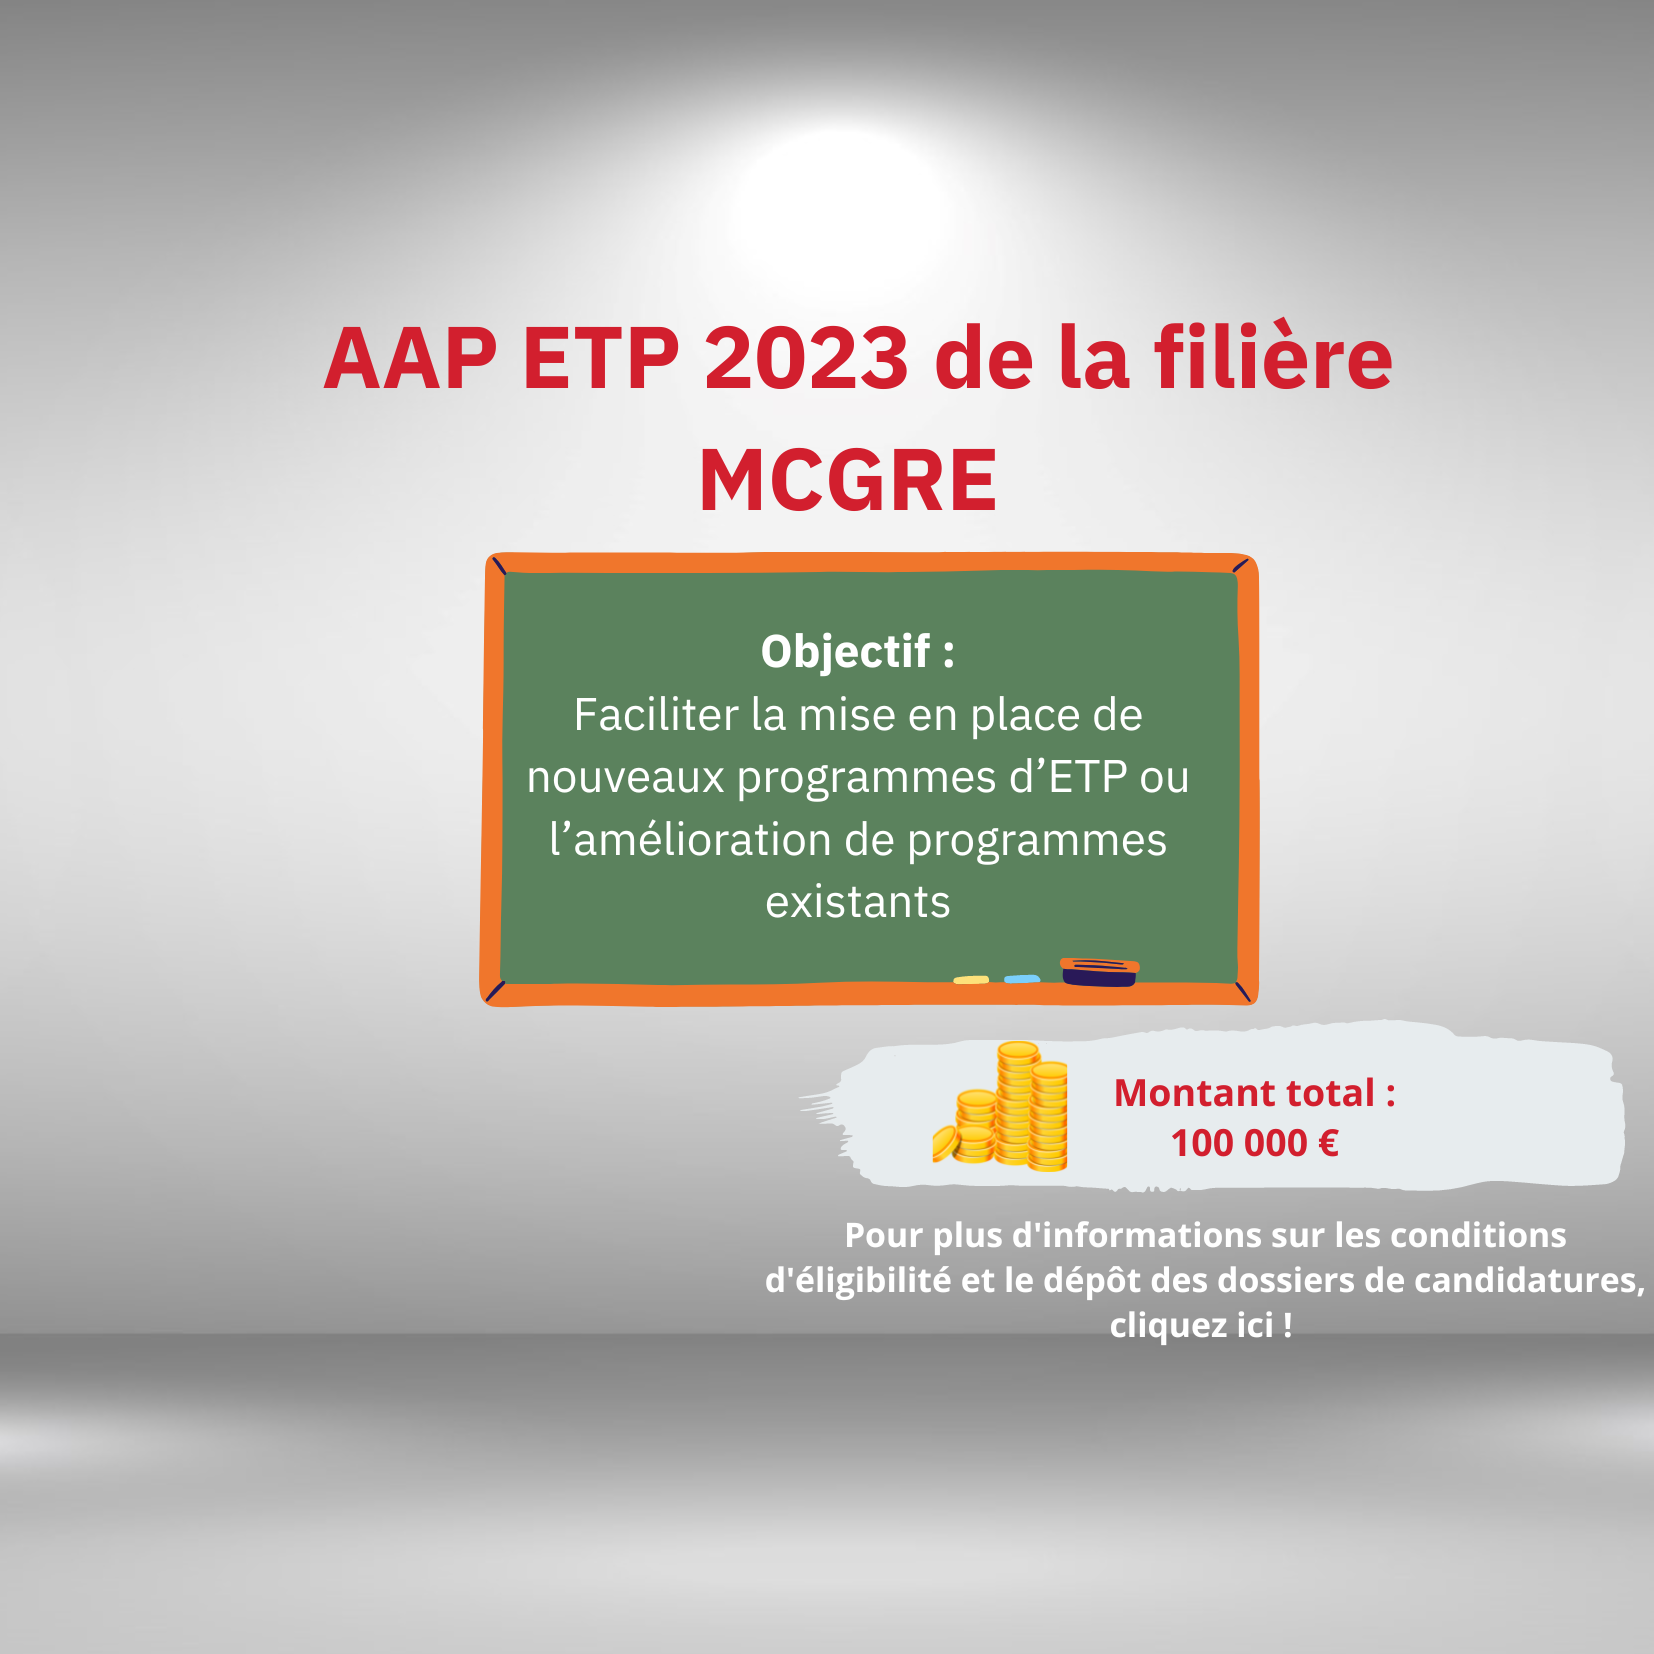 AAP ETP 2023 